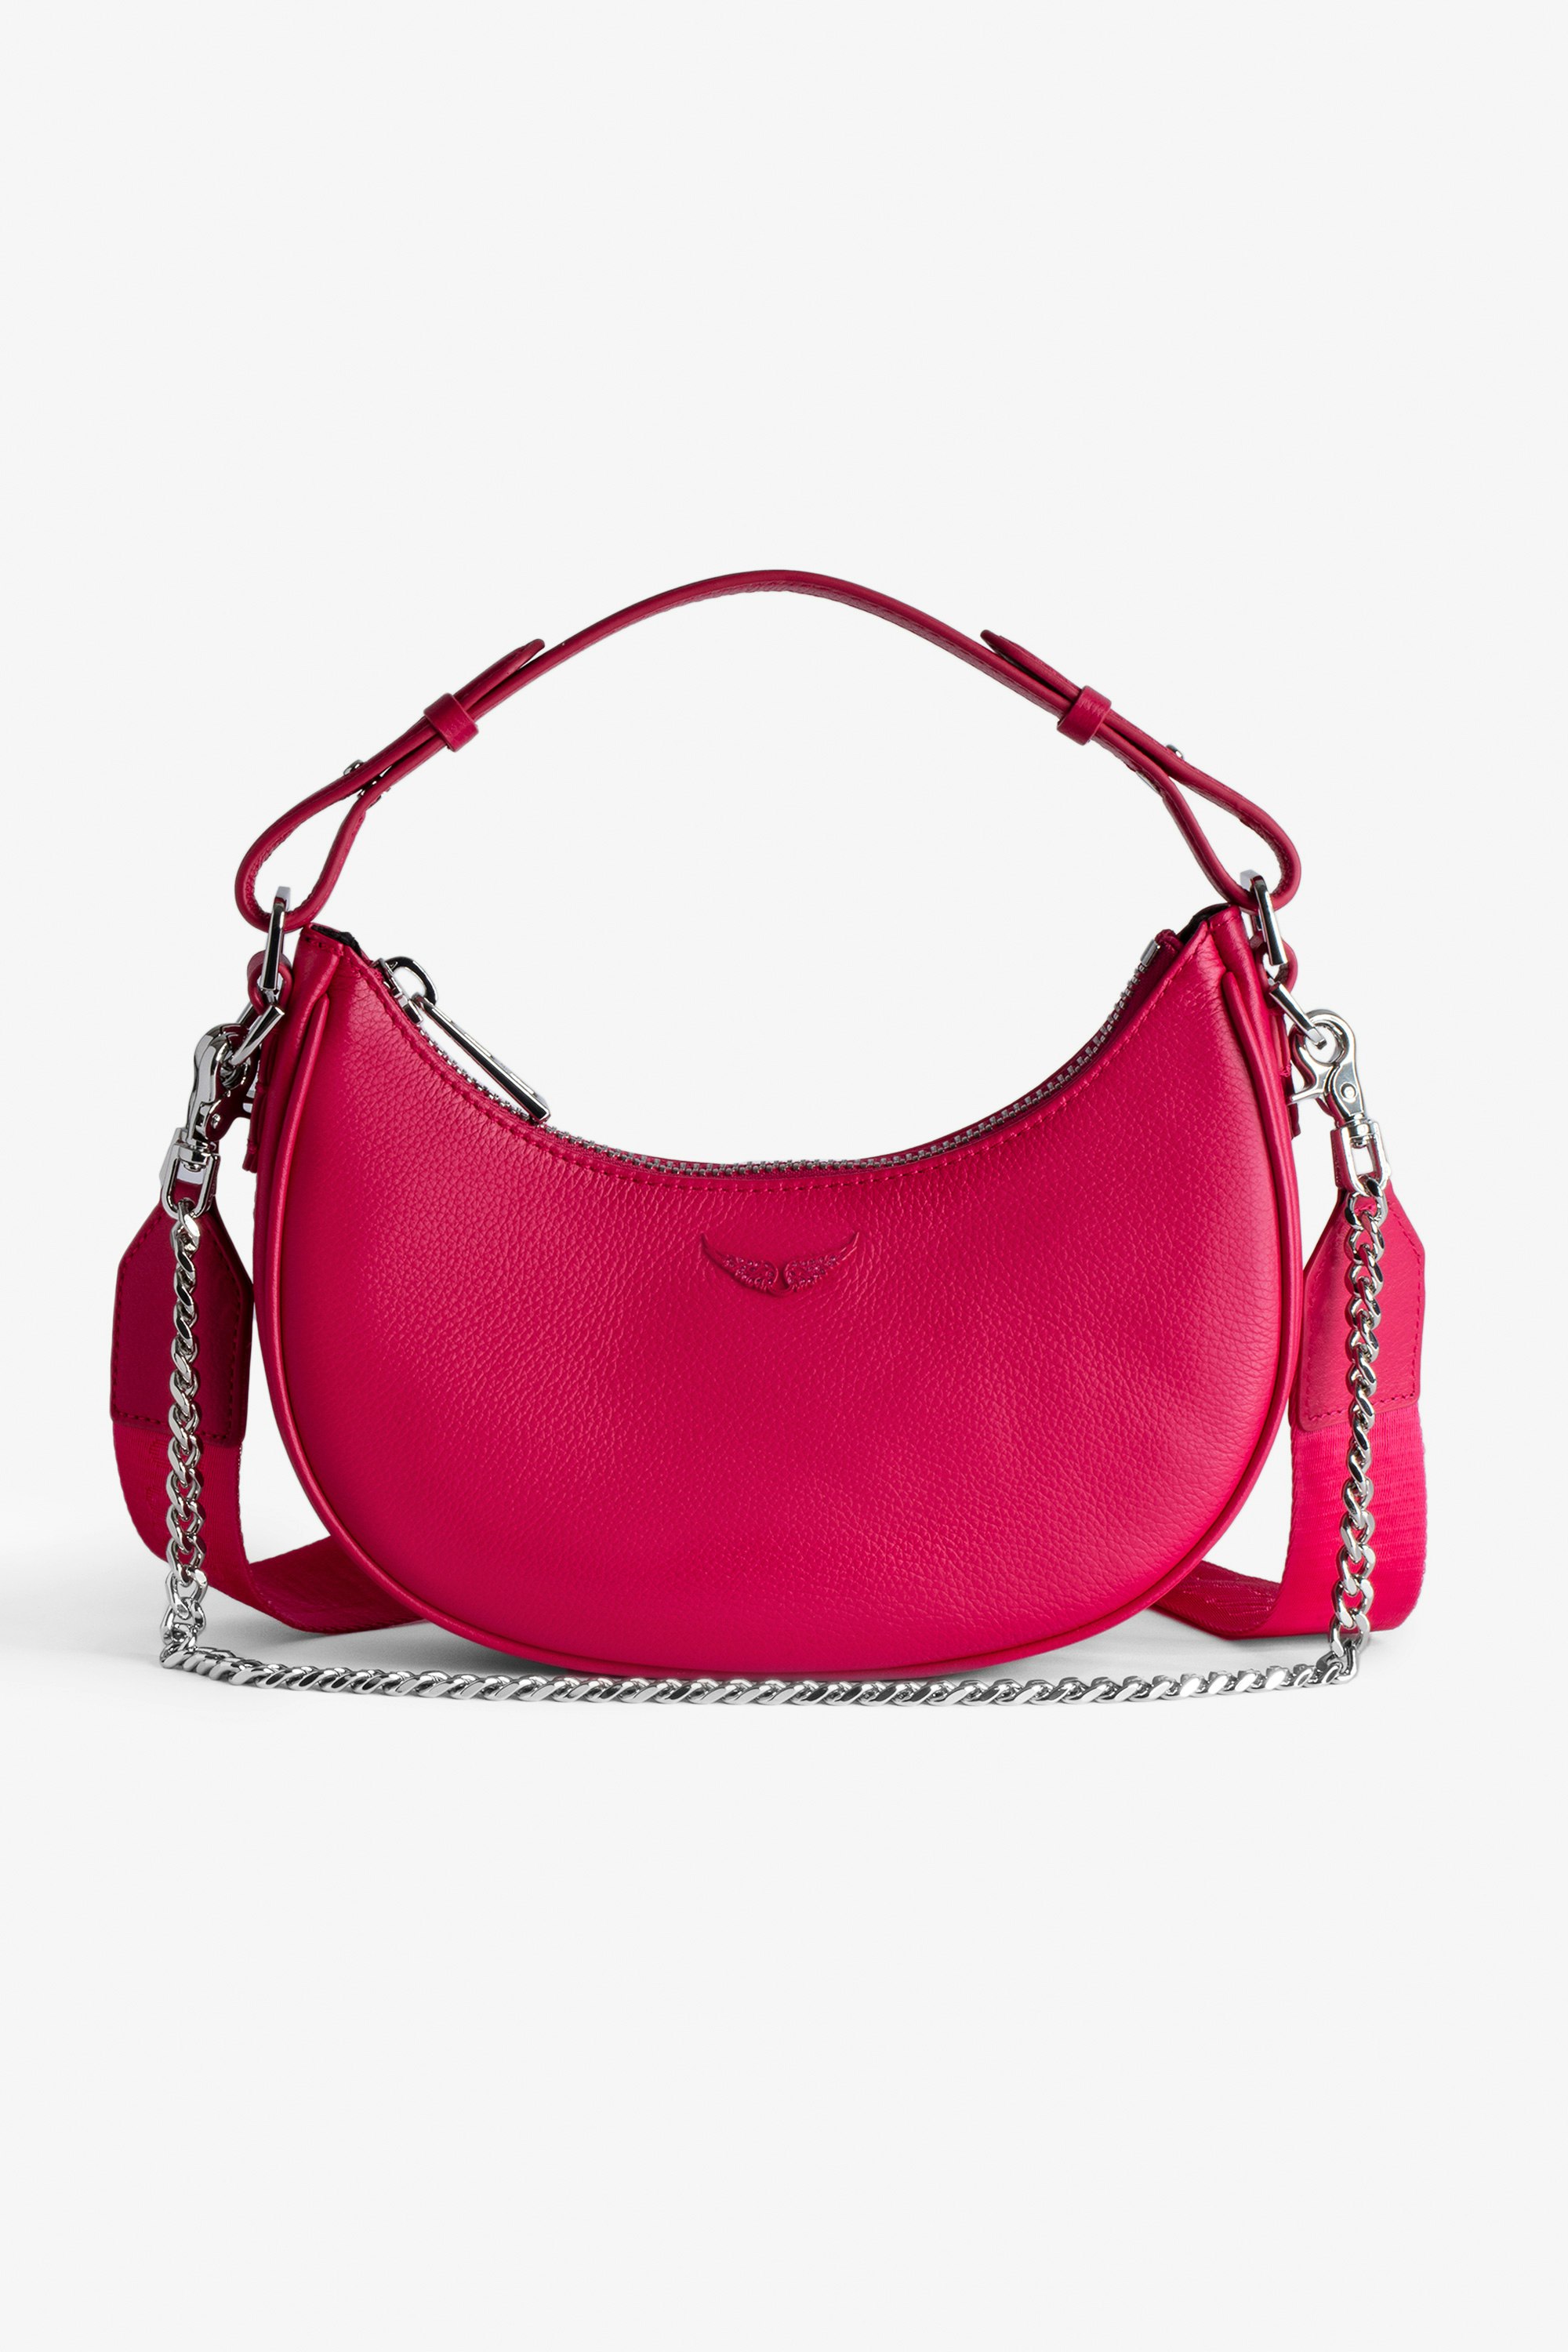 Tasche Moonrock - Halbmondtasche für Damen aus rosafarbenem, genarbtem Leder mit kurzem Henkel, Schulterriemen, Kette und Signature-Flügeln.